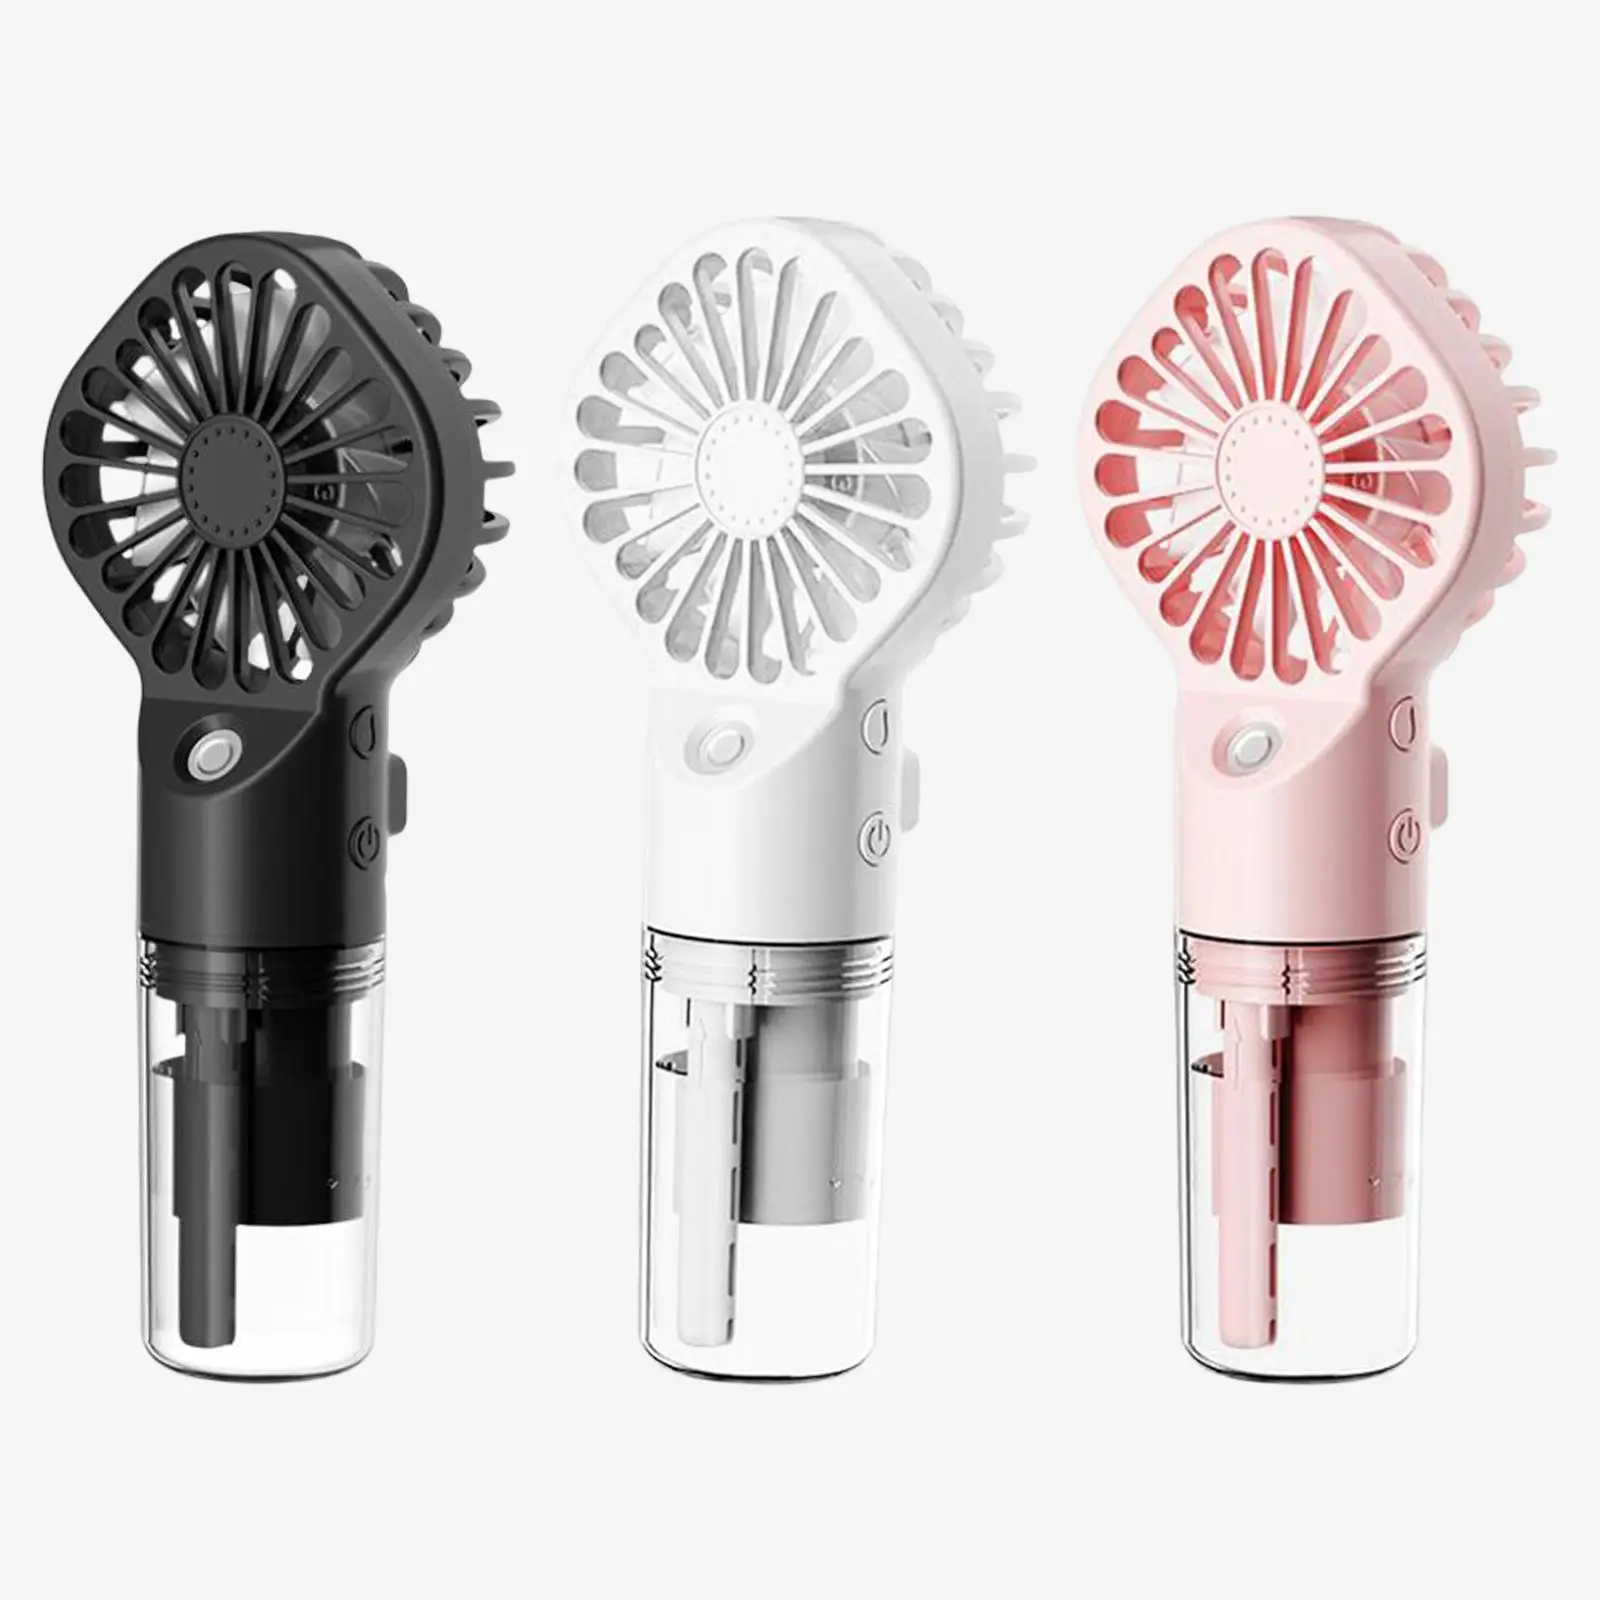 Portable Handheld Misting Fan, Water Spray Fan Personal Fan Mini Fan Humidifier for Travel, Camping, Outdoors, Makeup